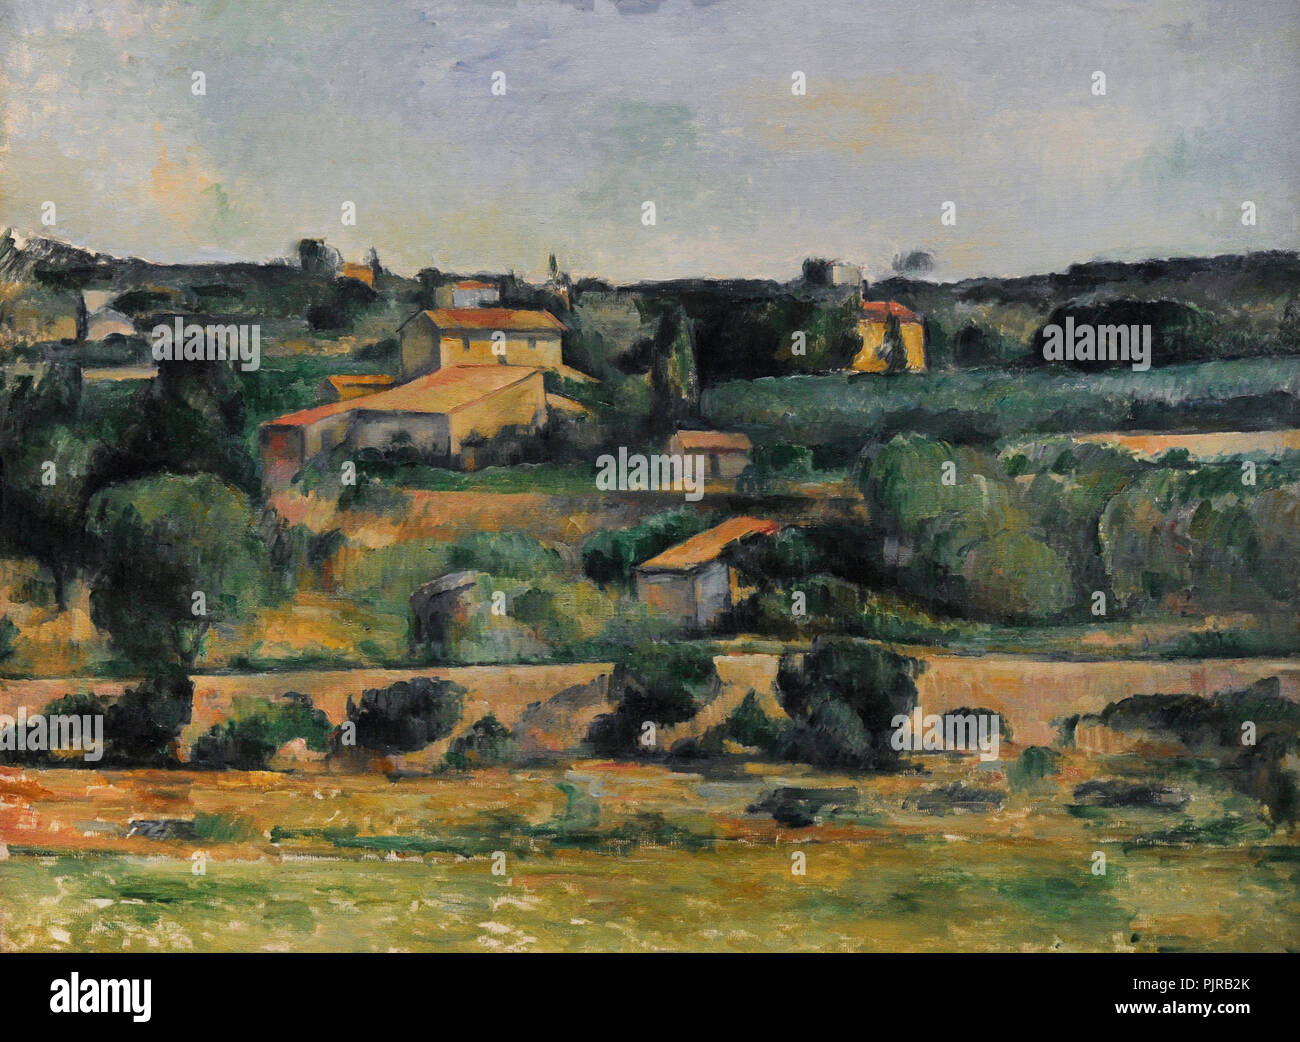 Paul Cézanne (1839-1906). Le peintre français. Paysage dans l'ouest de Aix-en-Provence, ca.1878). Musée Wallraf-Richartz. Cologne. L'Allemagne. Banque D'Images